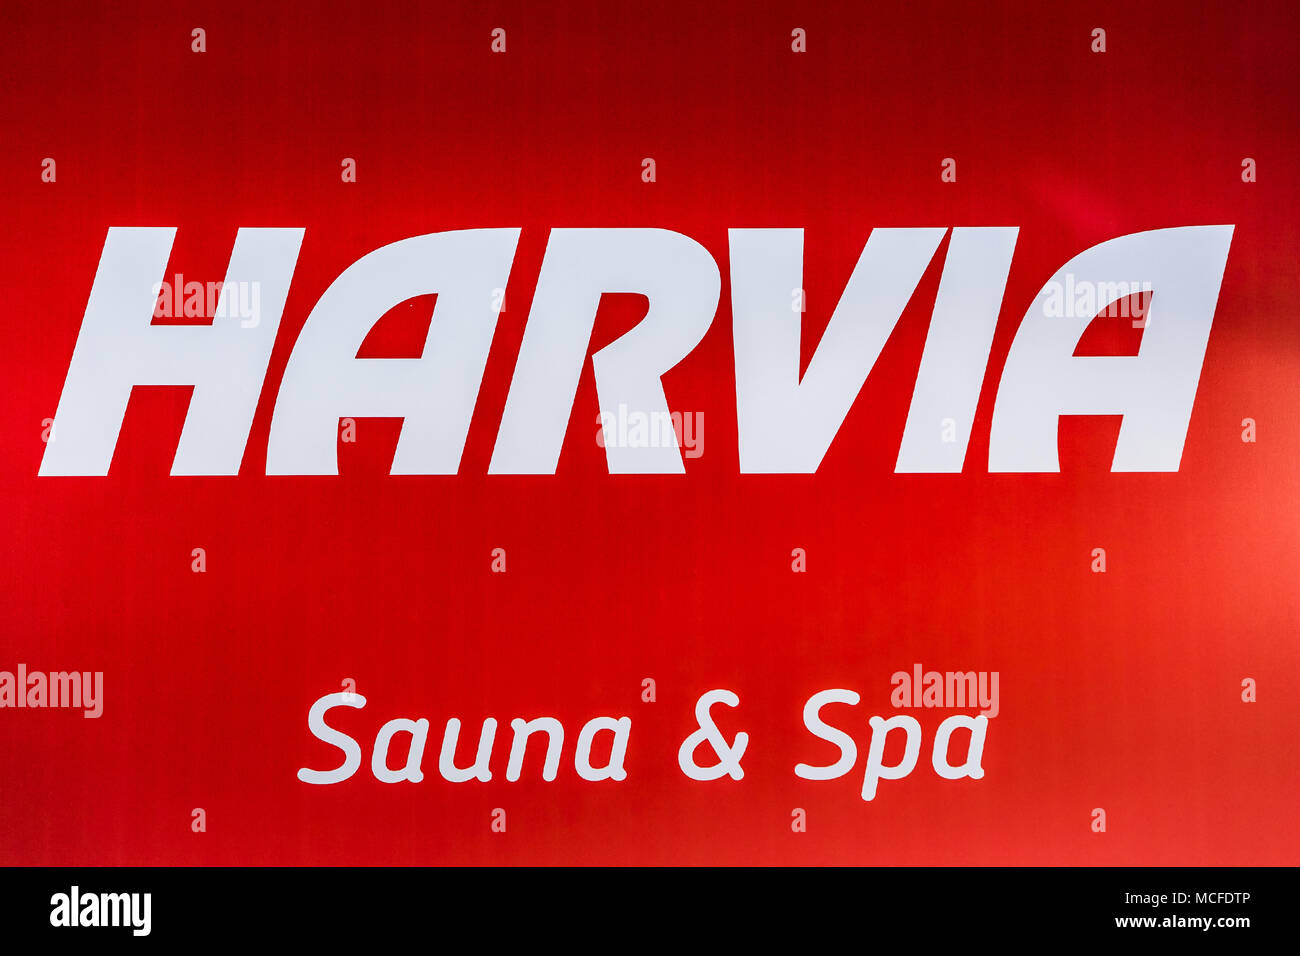 Logo Société Harvia signe imprimé sur la bannière. Harvia est un appareil de chauffage et d'un sauna finlandais interiors fabricant. Banque D'Images